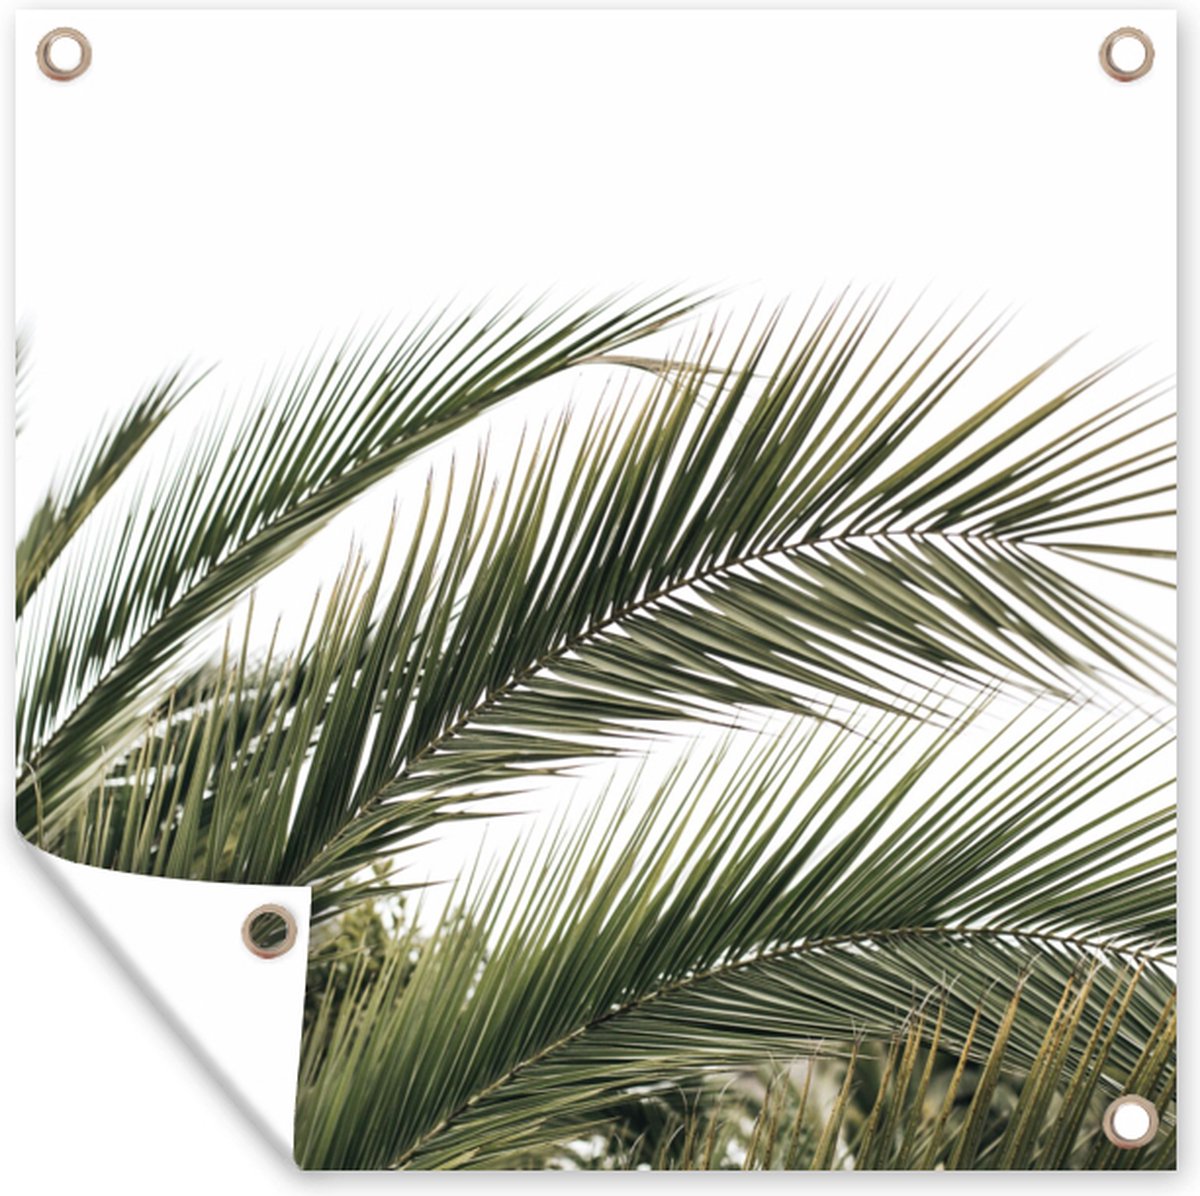 GreatGardenPosters - Tuindecoratie - Bladeren - Palmboom - Natuur - Zomer - 200x200 cm - Tuinposter - Muurdecoratie - Wanddecoratie - Tuindoek - Buitenposter